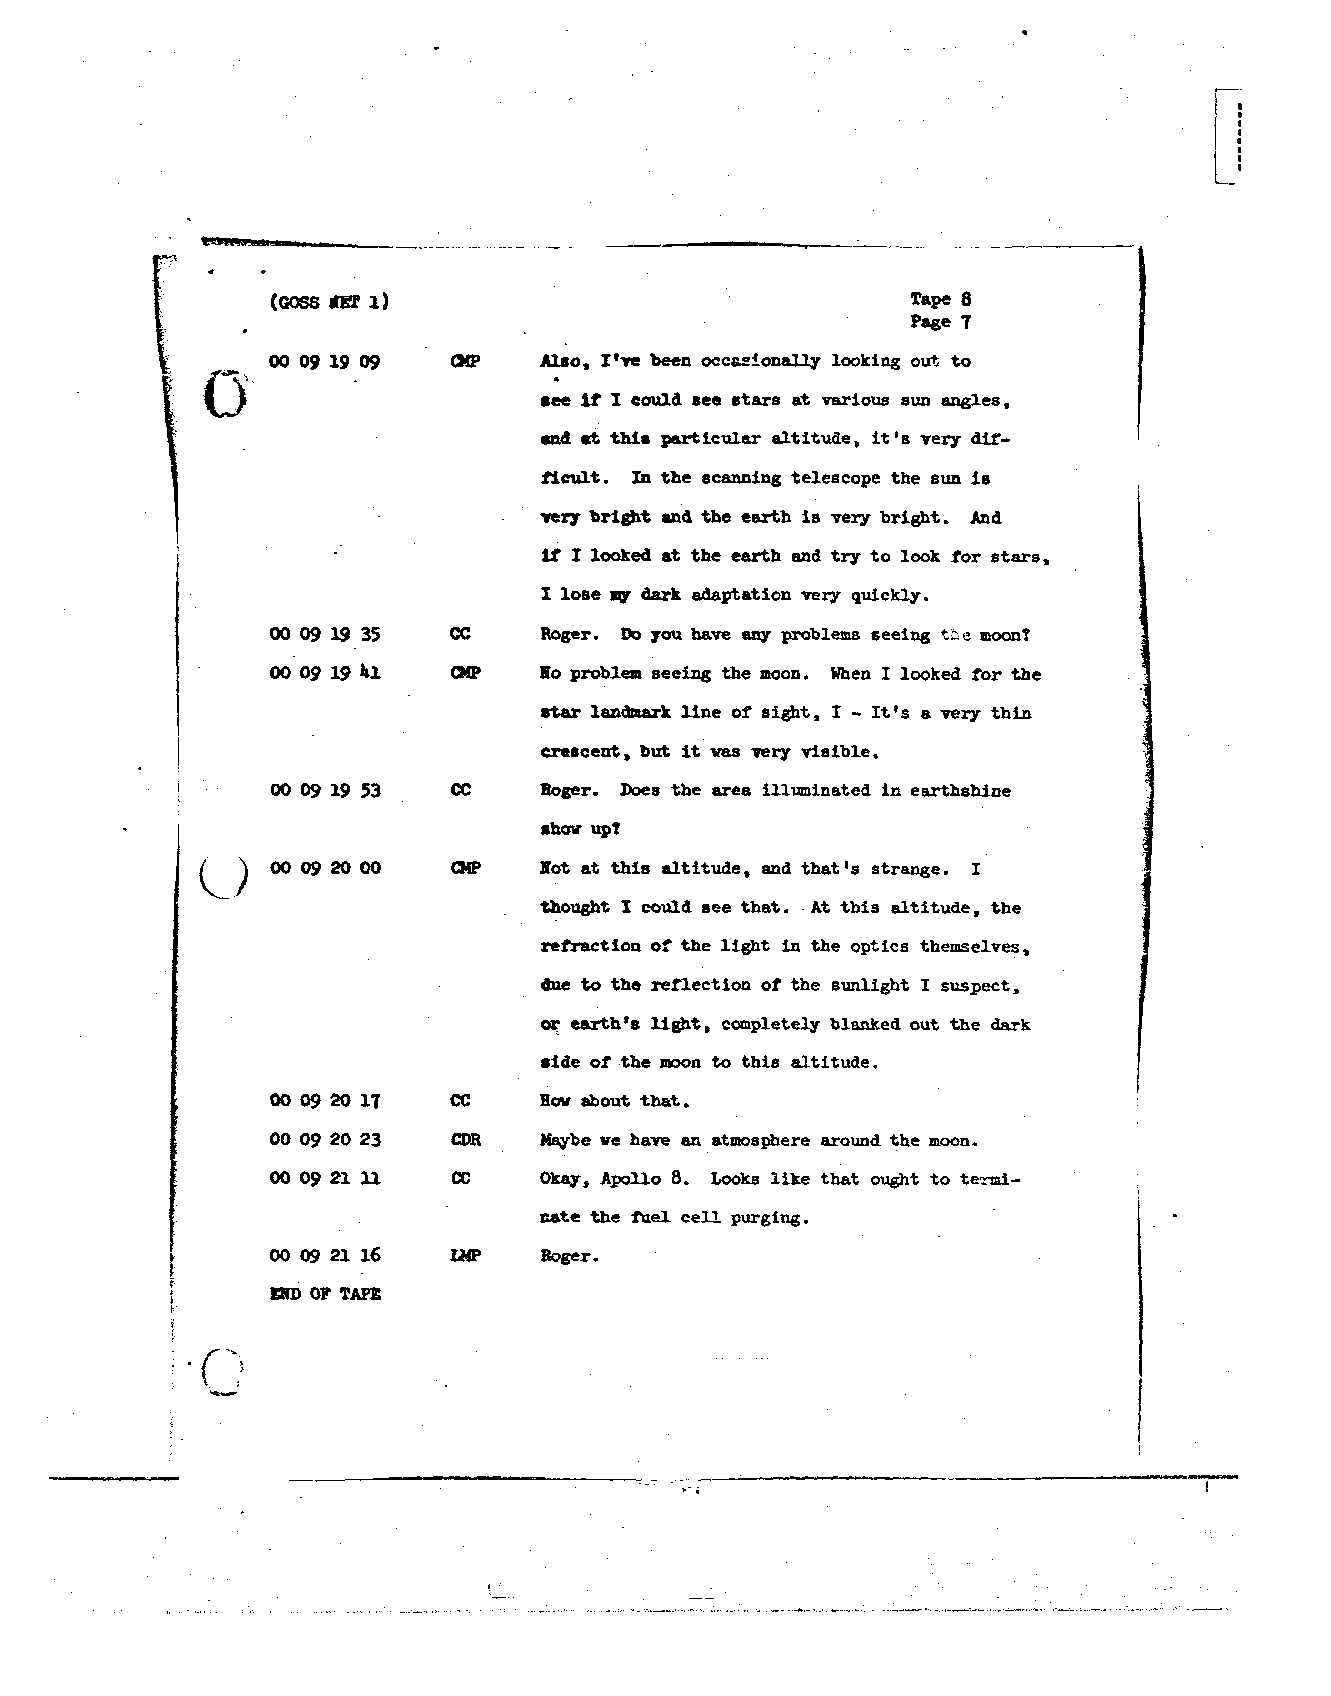 Page 79 of Apollo 8’s original transcript